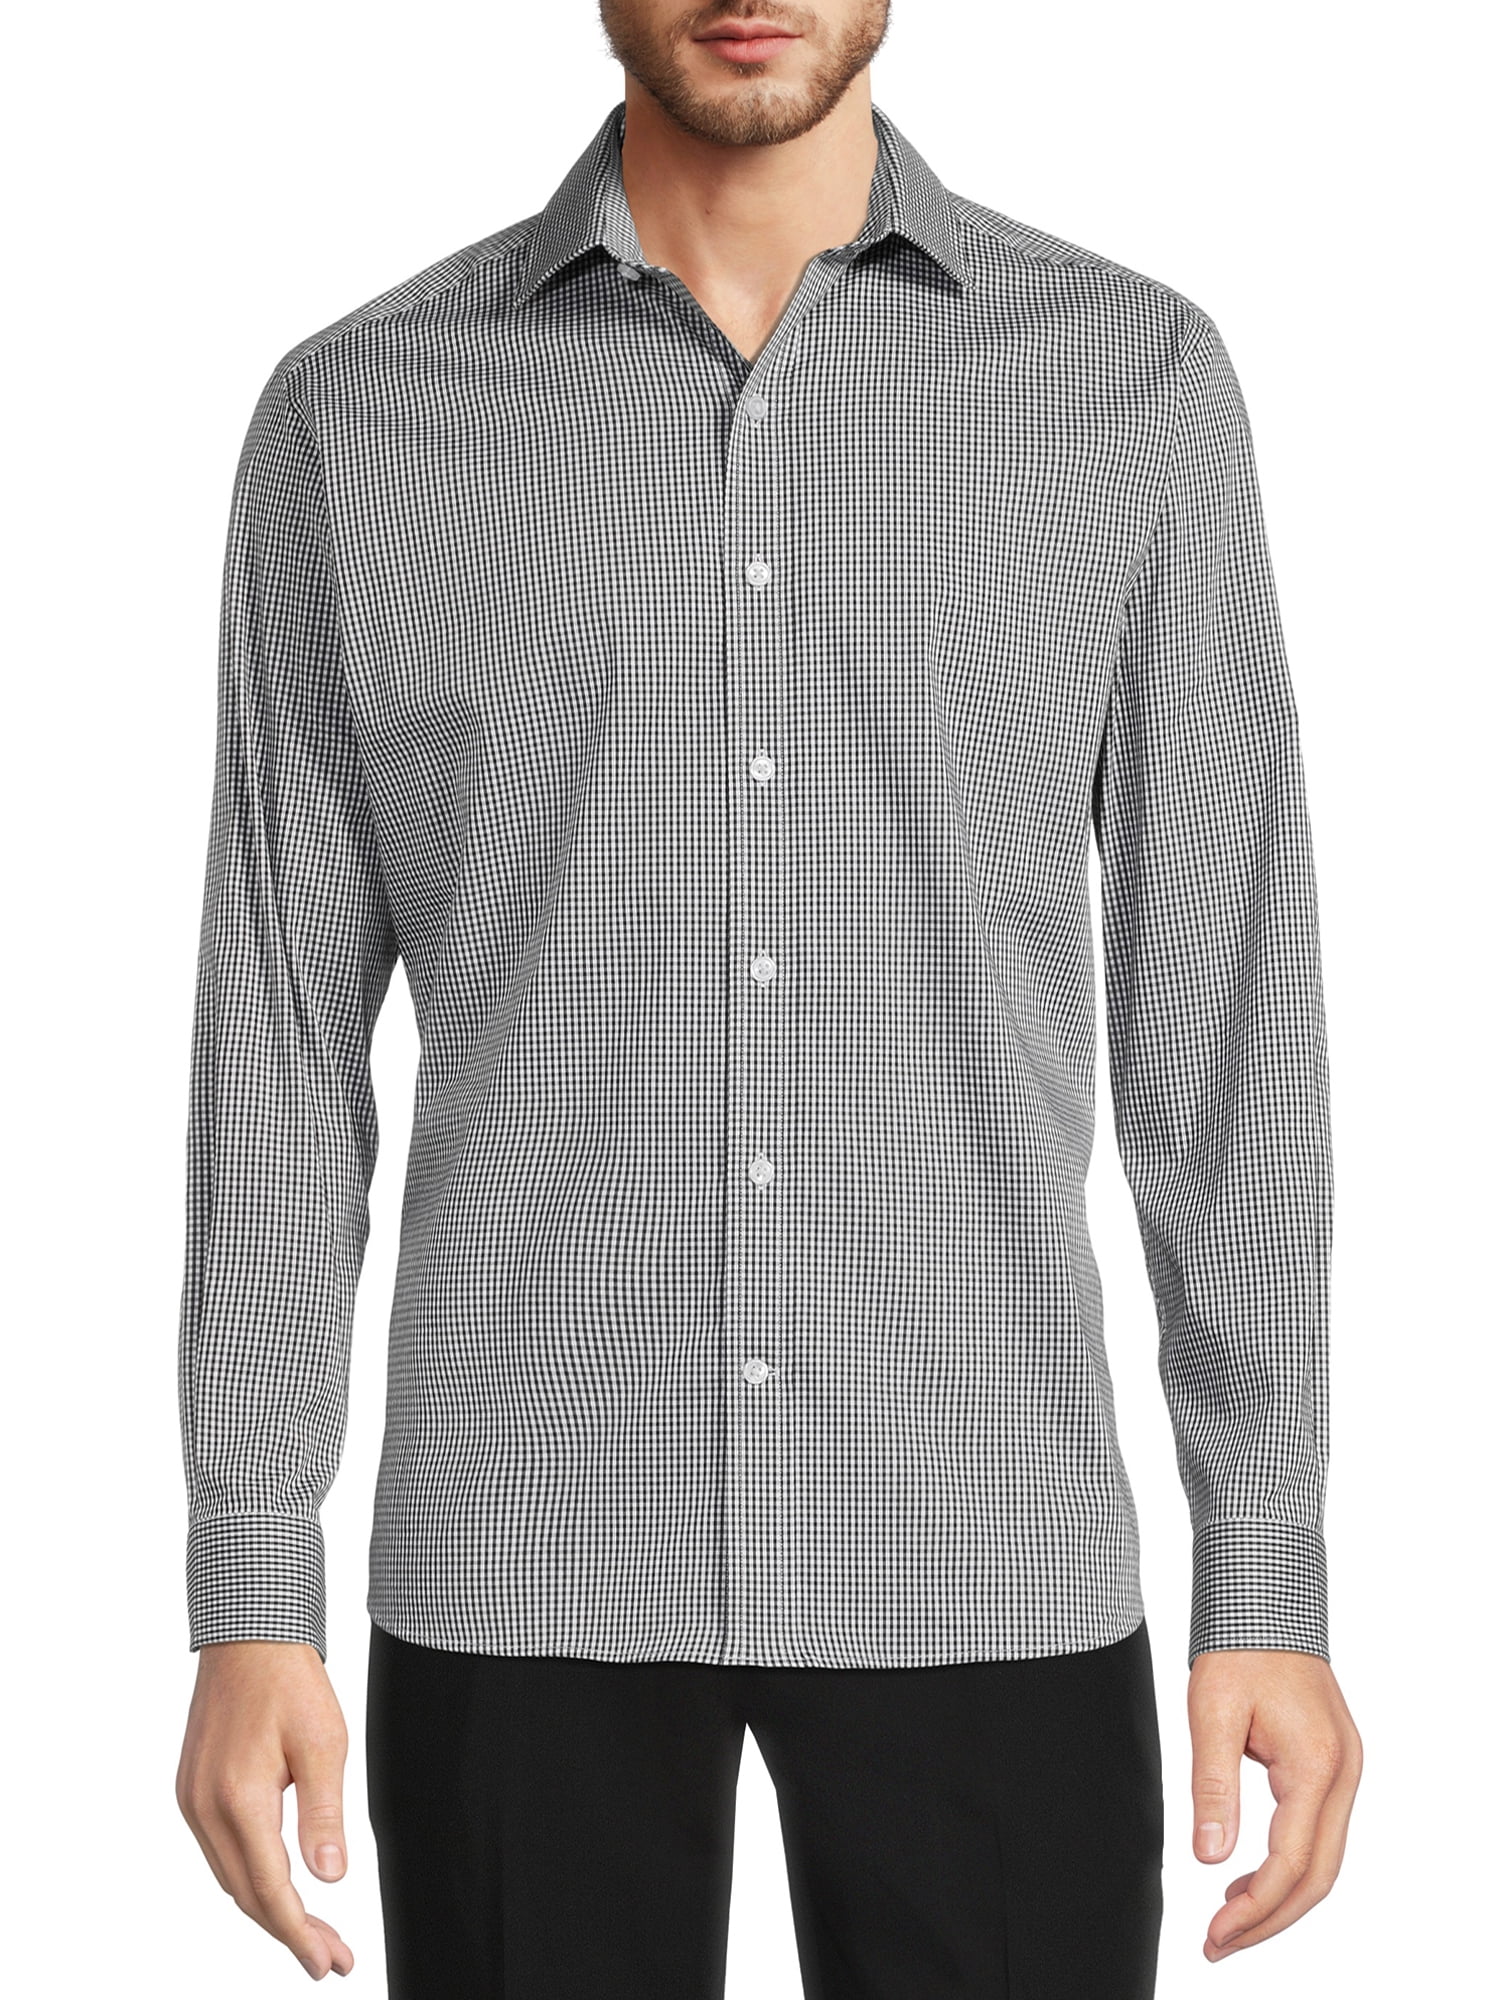 George Men's Modern Fit Dress Shirt - Walmart.com